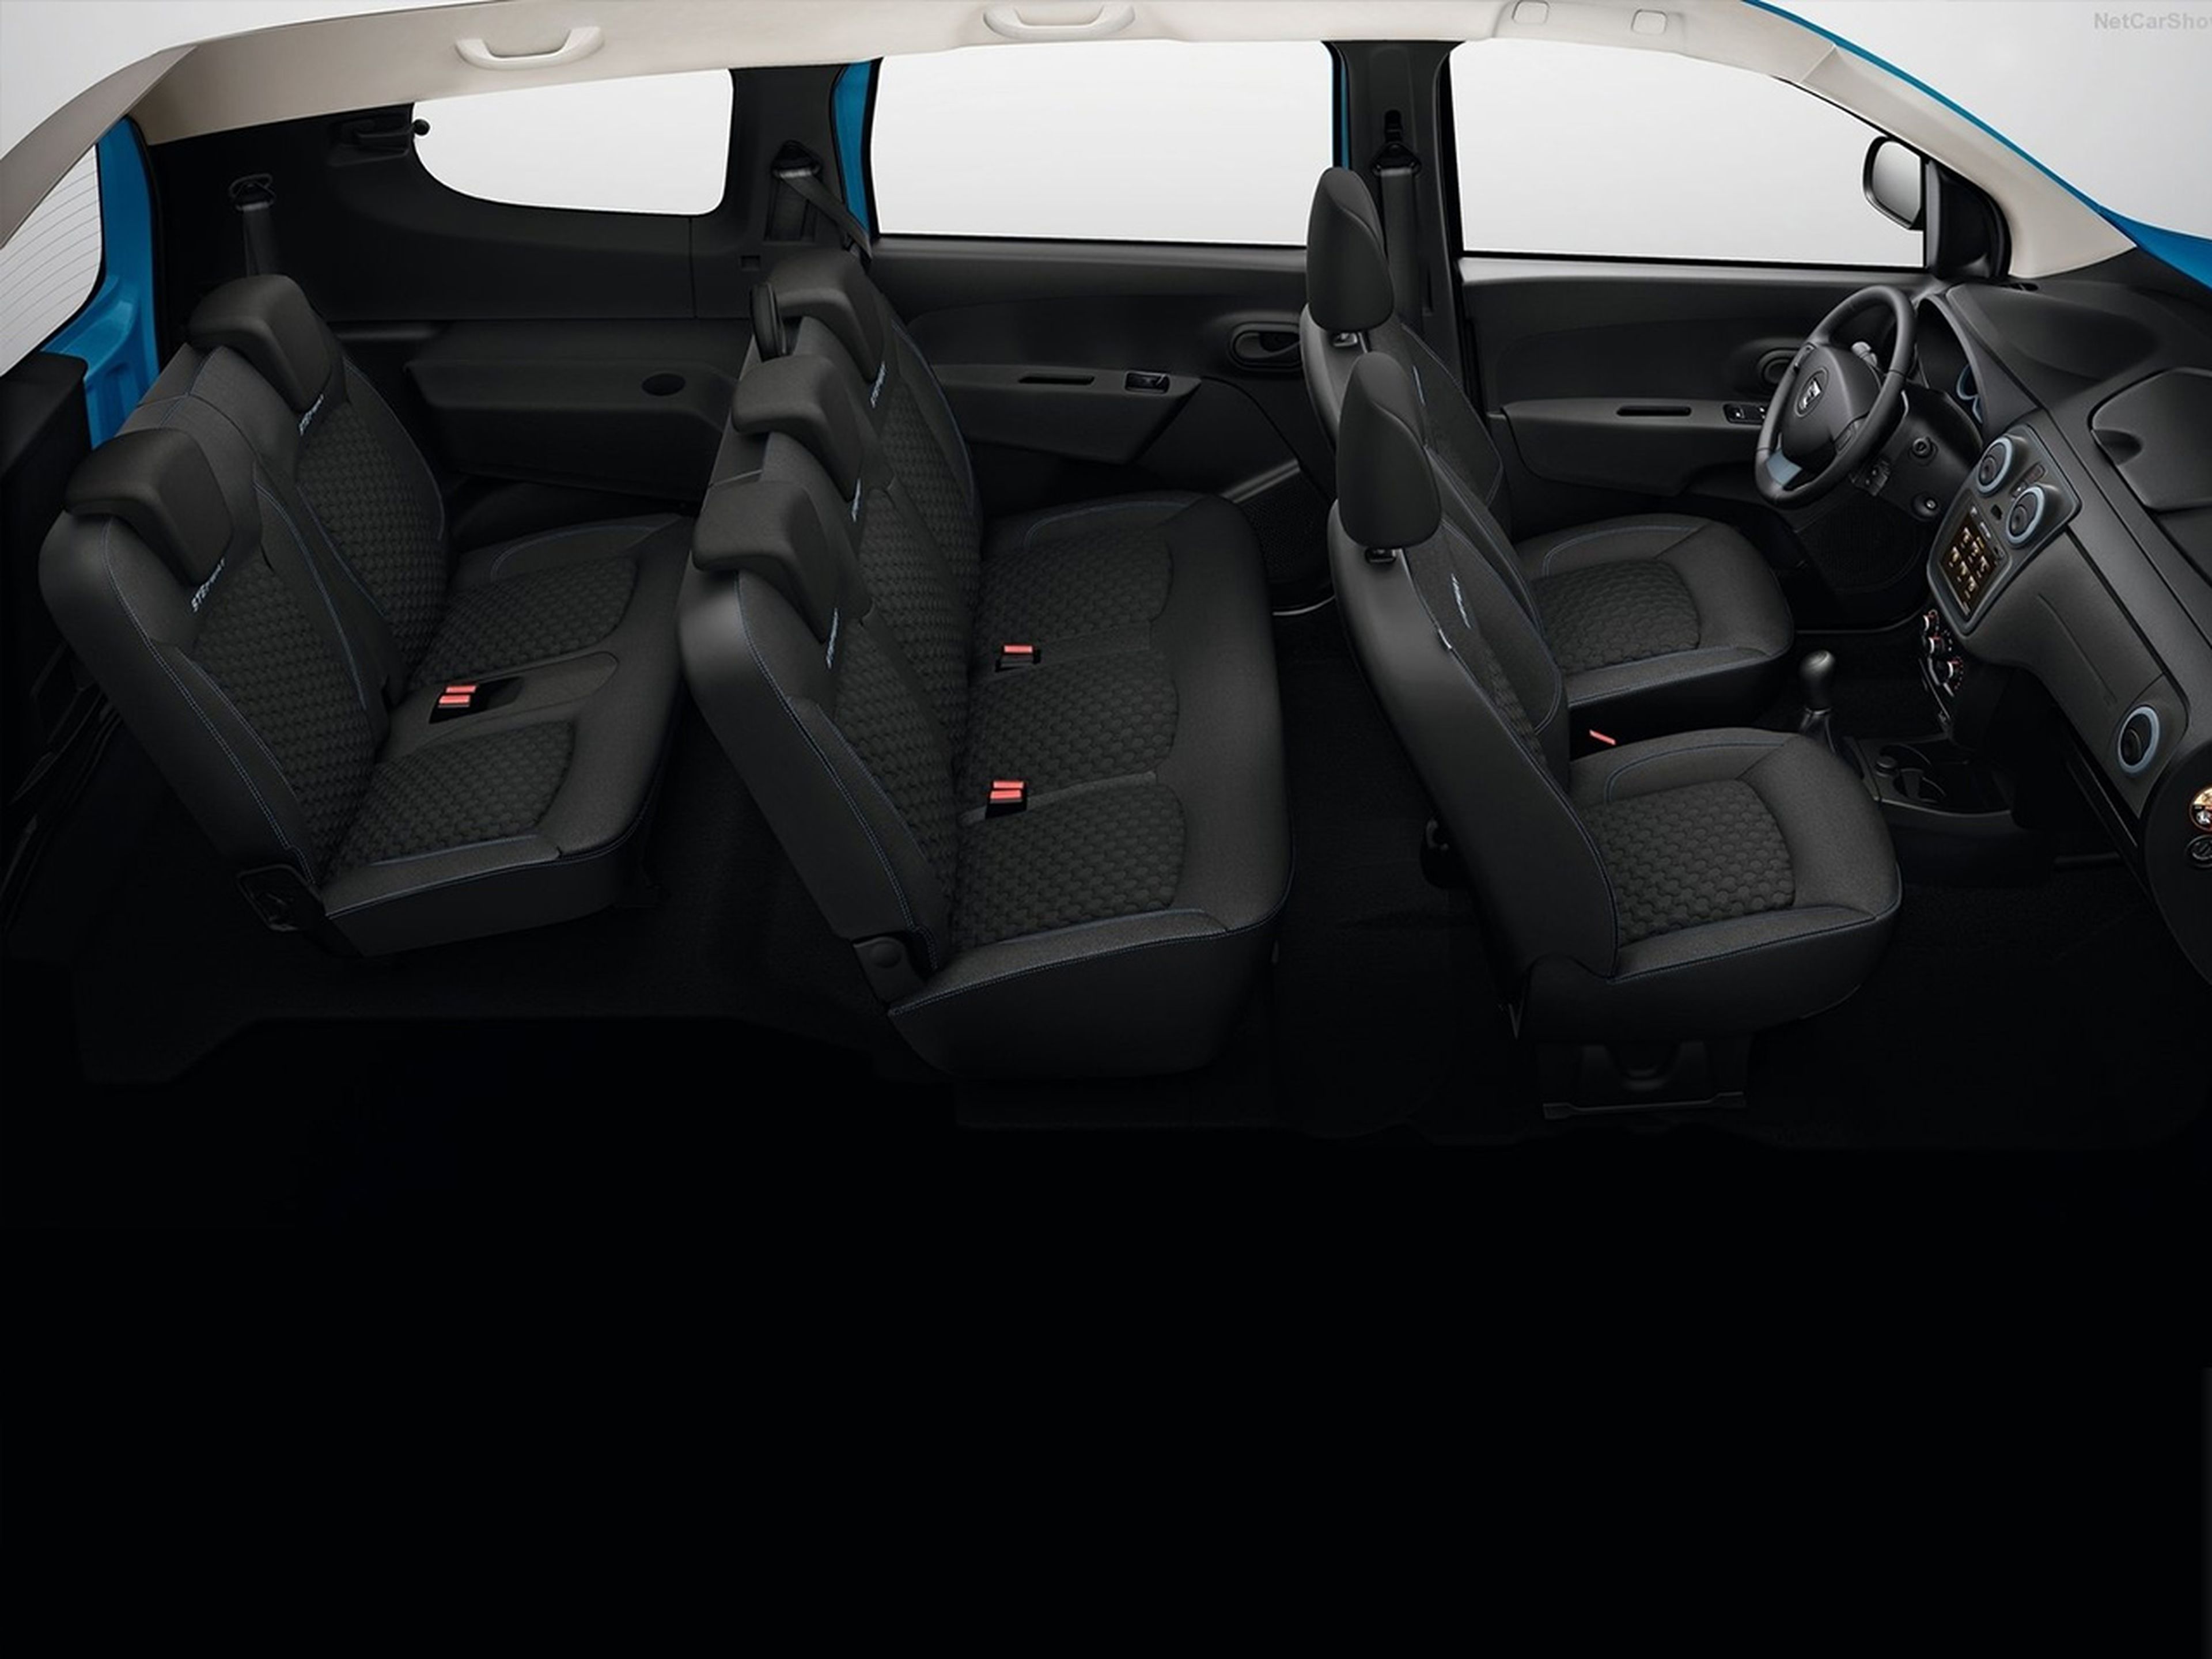 Dacia Lodgy, todas las versiones y motorizaciones del mercado, con precios,  imágenes, datos técnicos y pruebas.